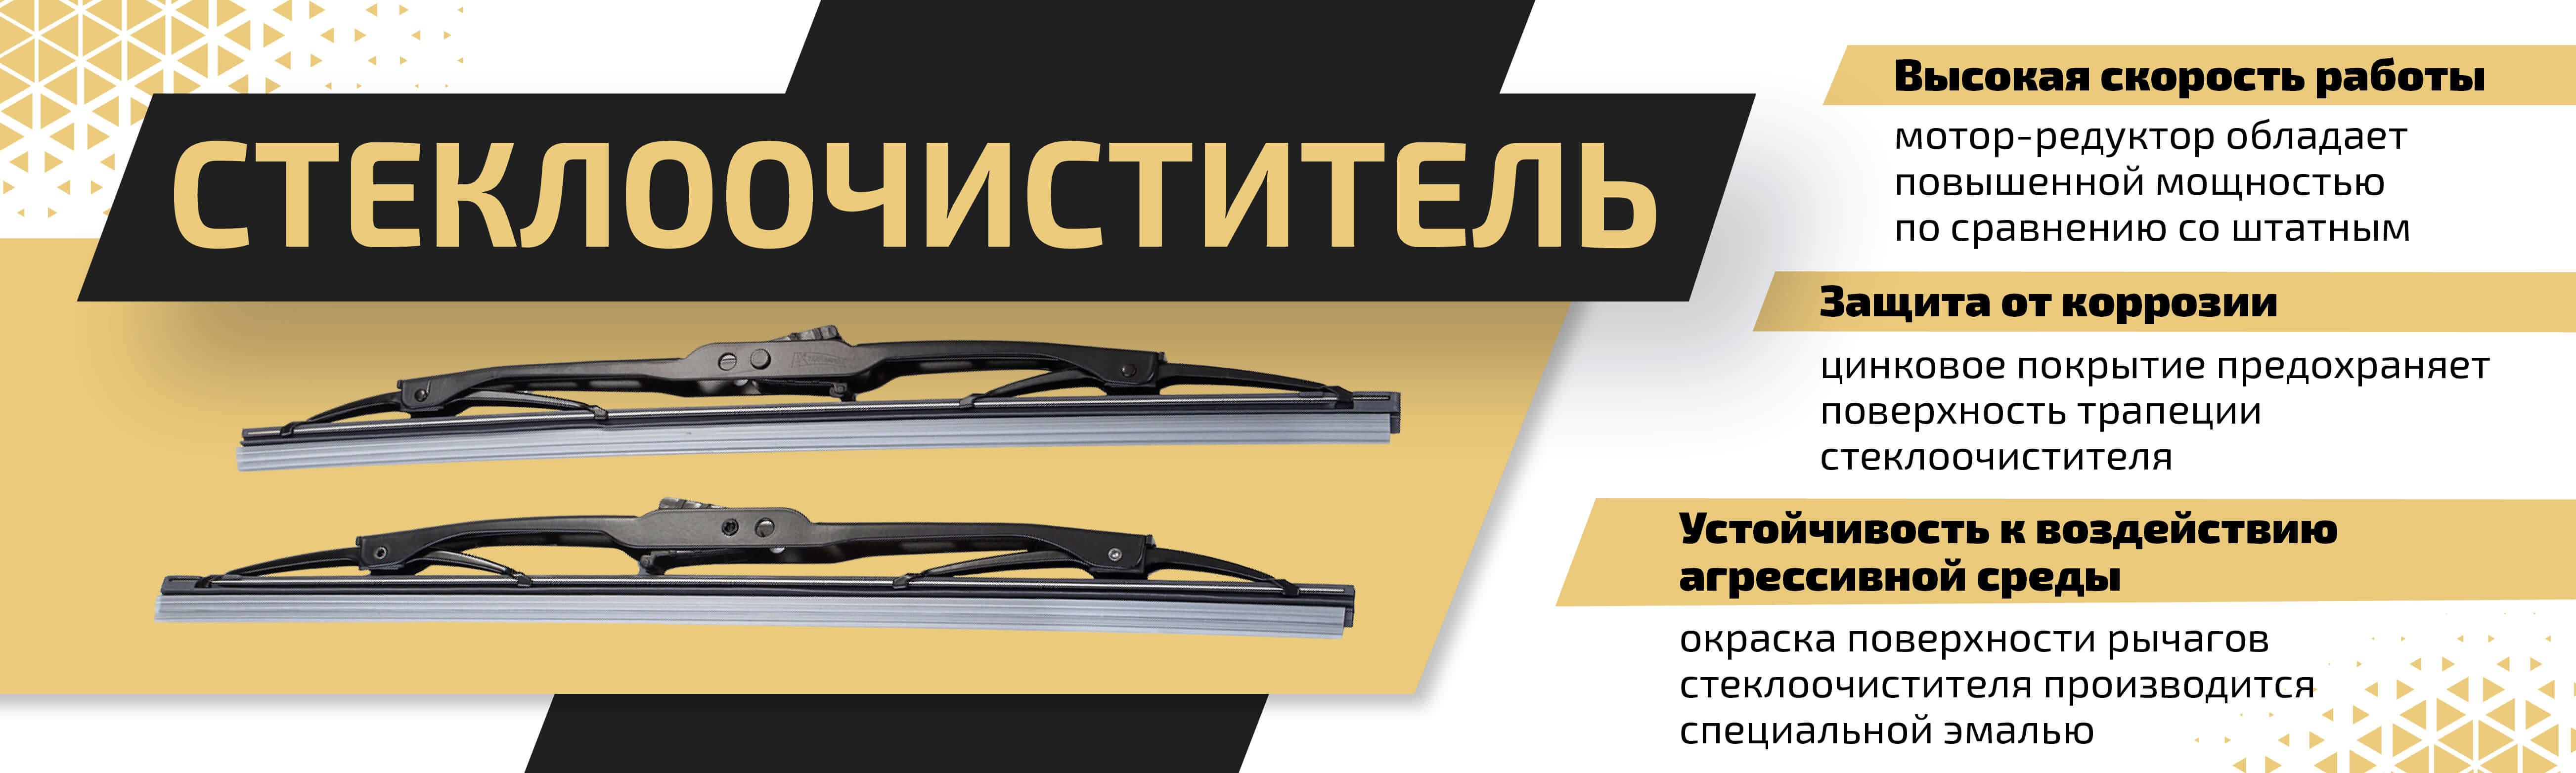 Стеклоочиститель и привод для ГАЗ и УАЗ ⚙ — купить в Санкт-Петербурге, цены в Metalpart.ru